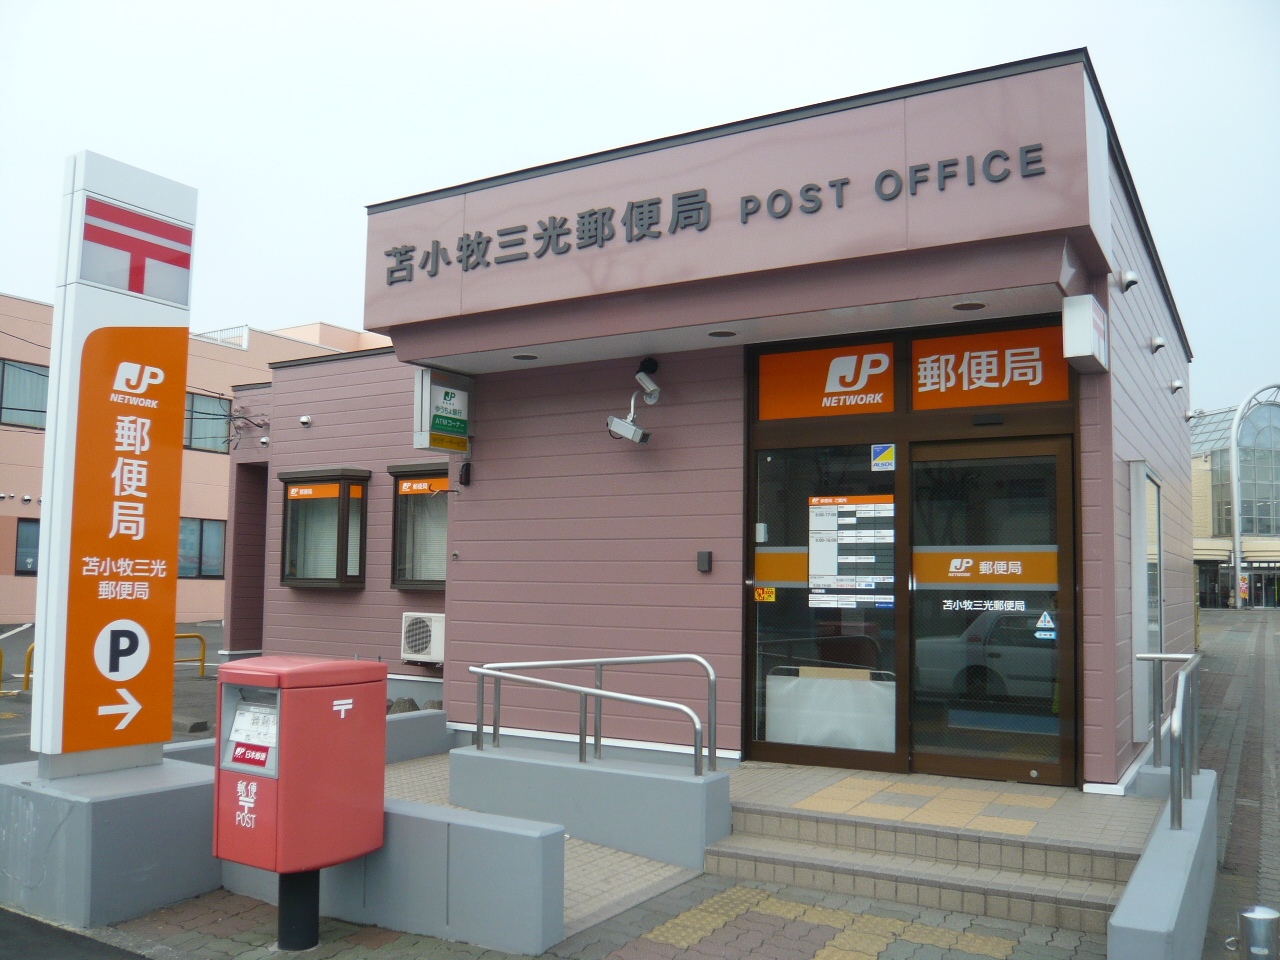 post office. 578m to Tomakomai Sanko post office (post office)